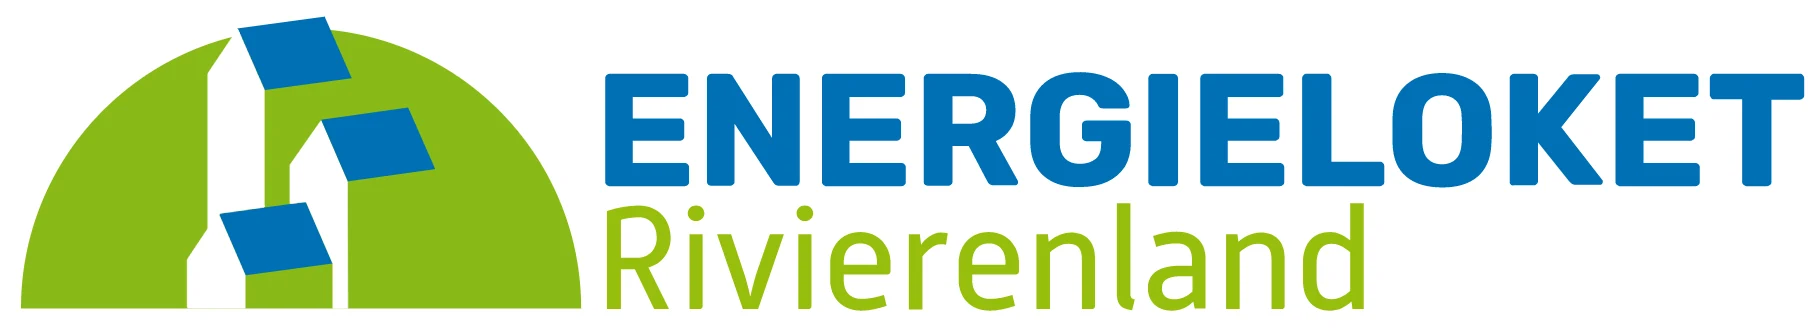 Energieloket Rivierenland